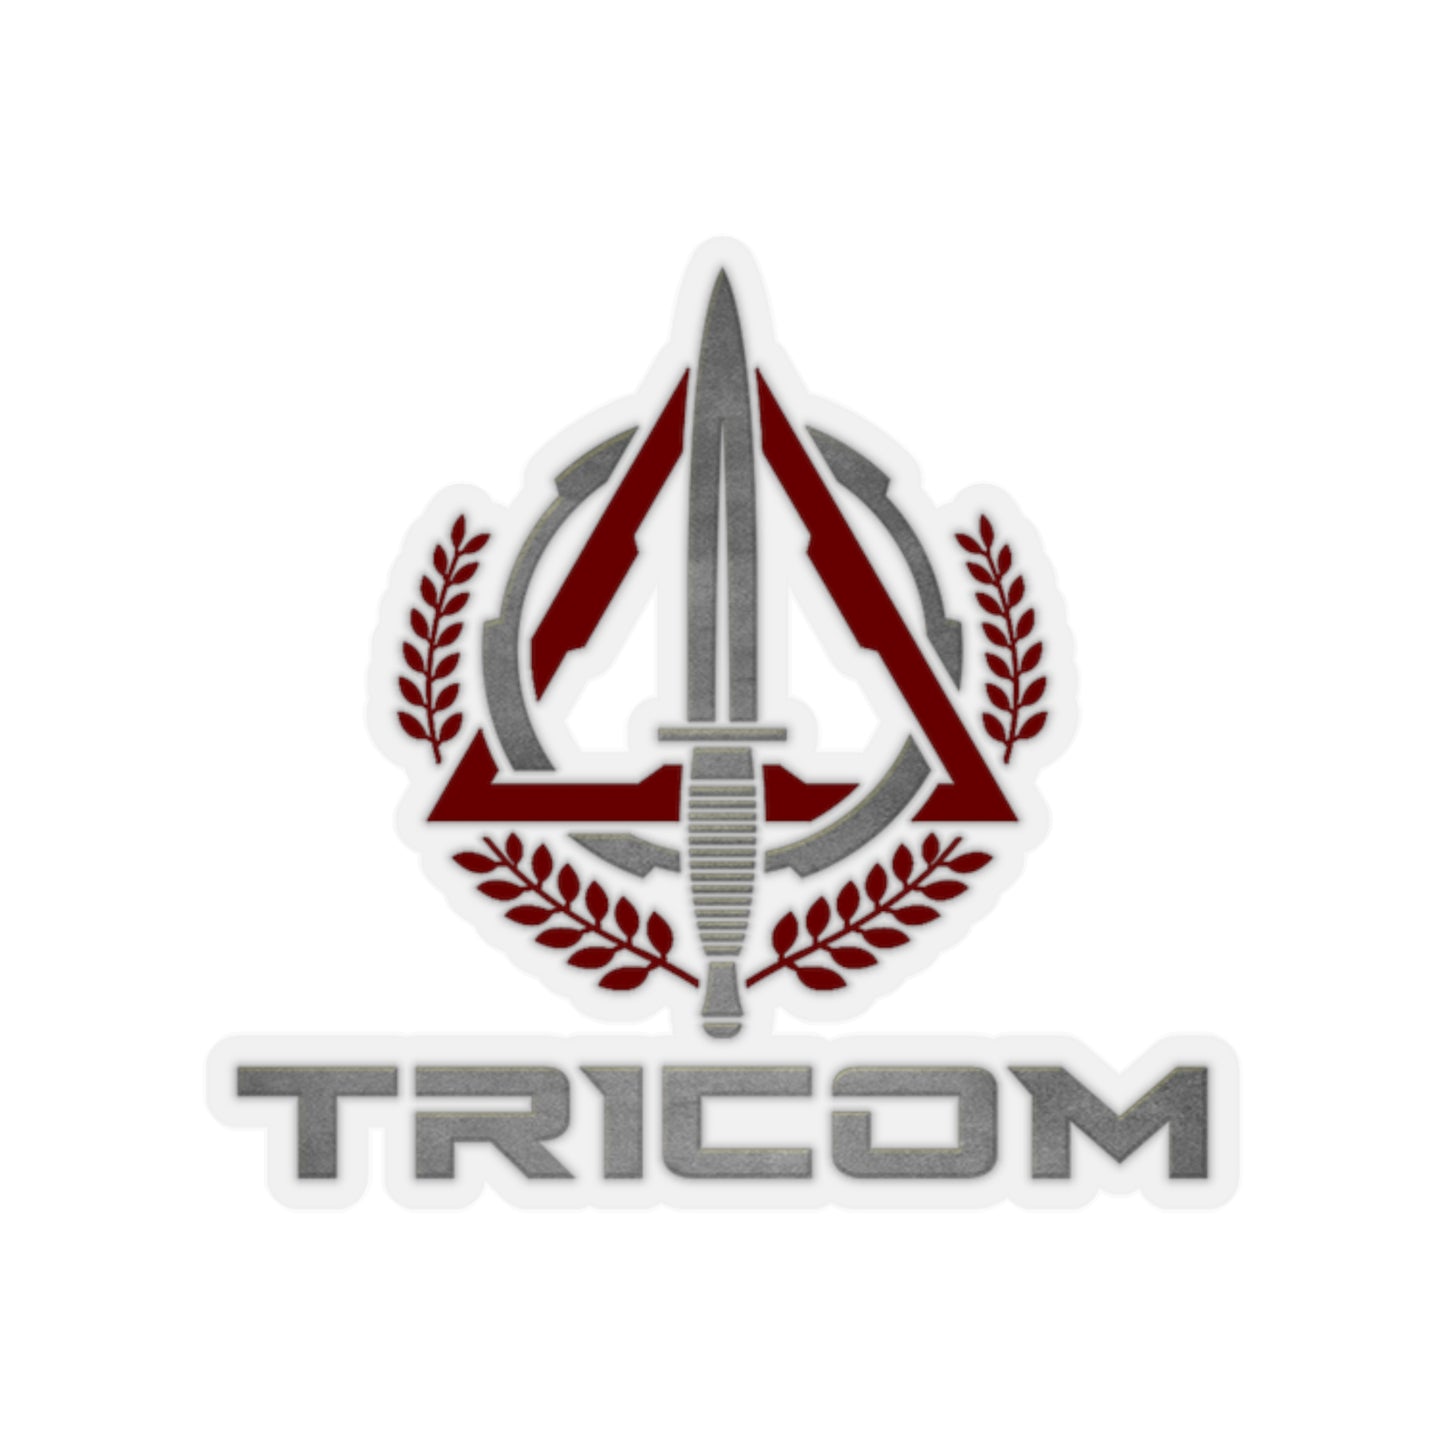 Red TRICOM Logo Kiss-Cut Stickers